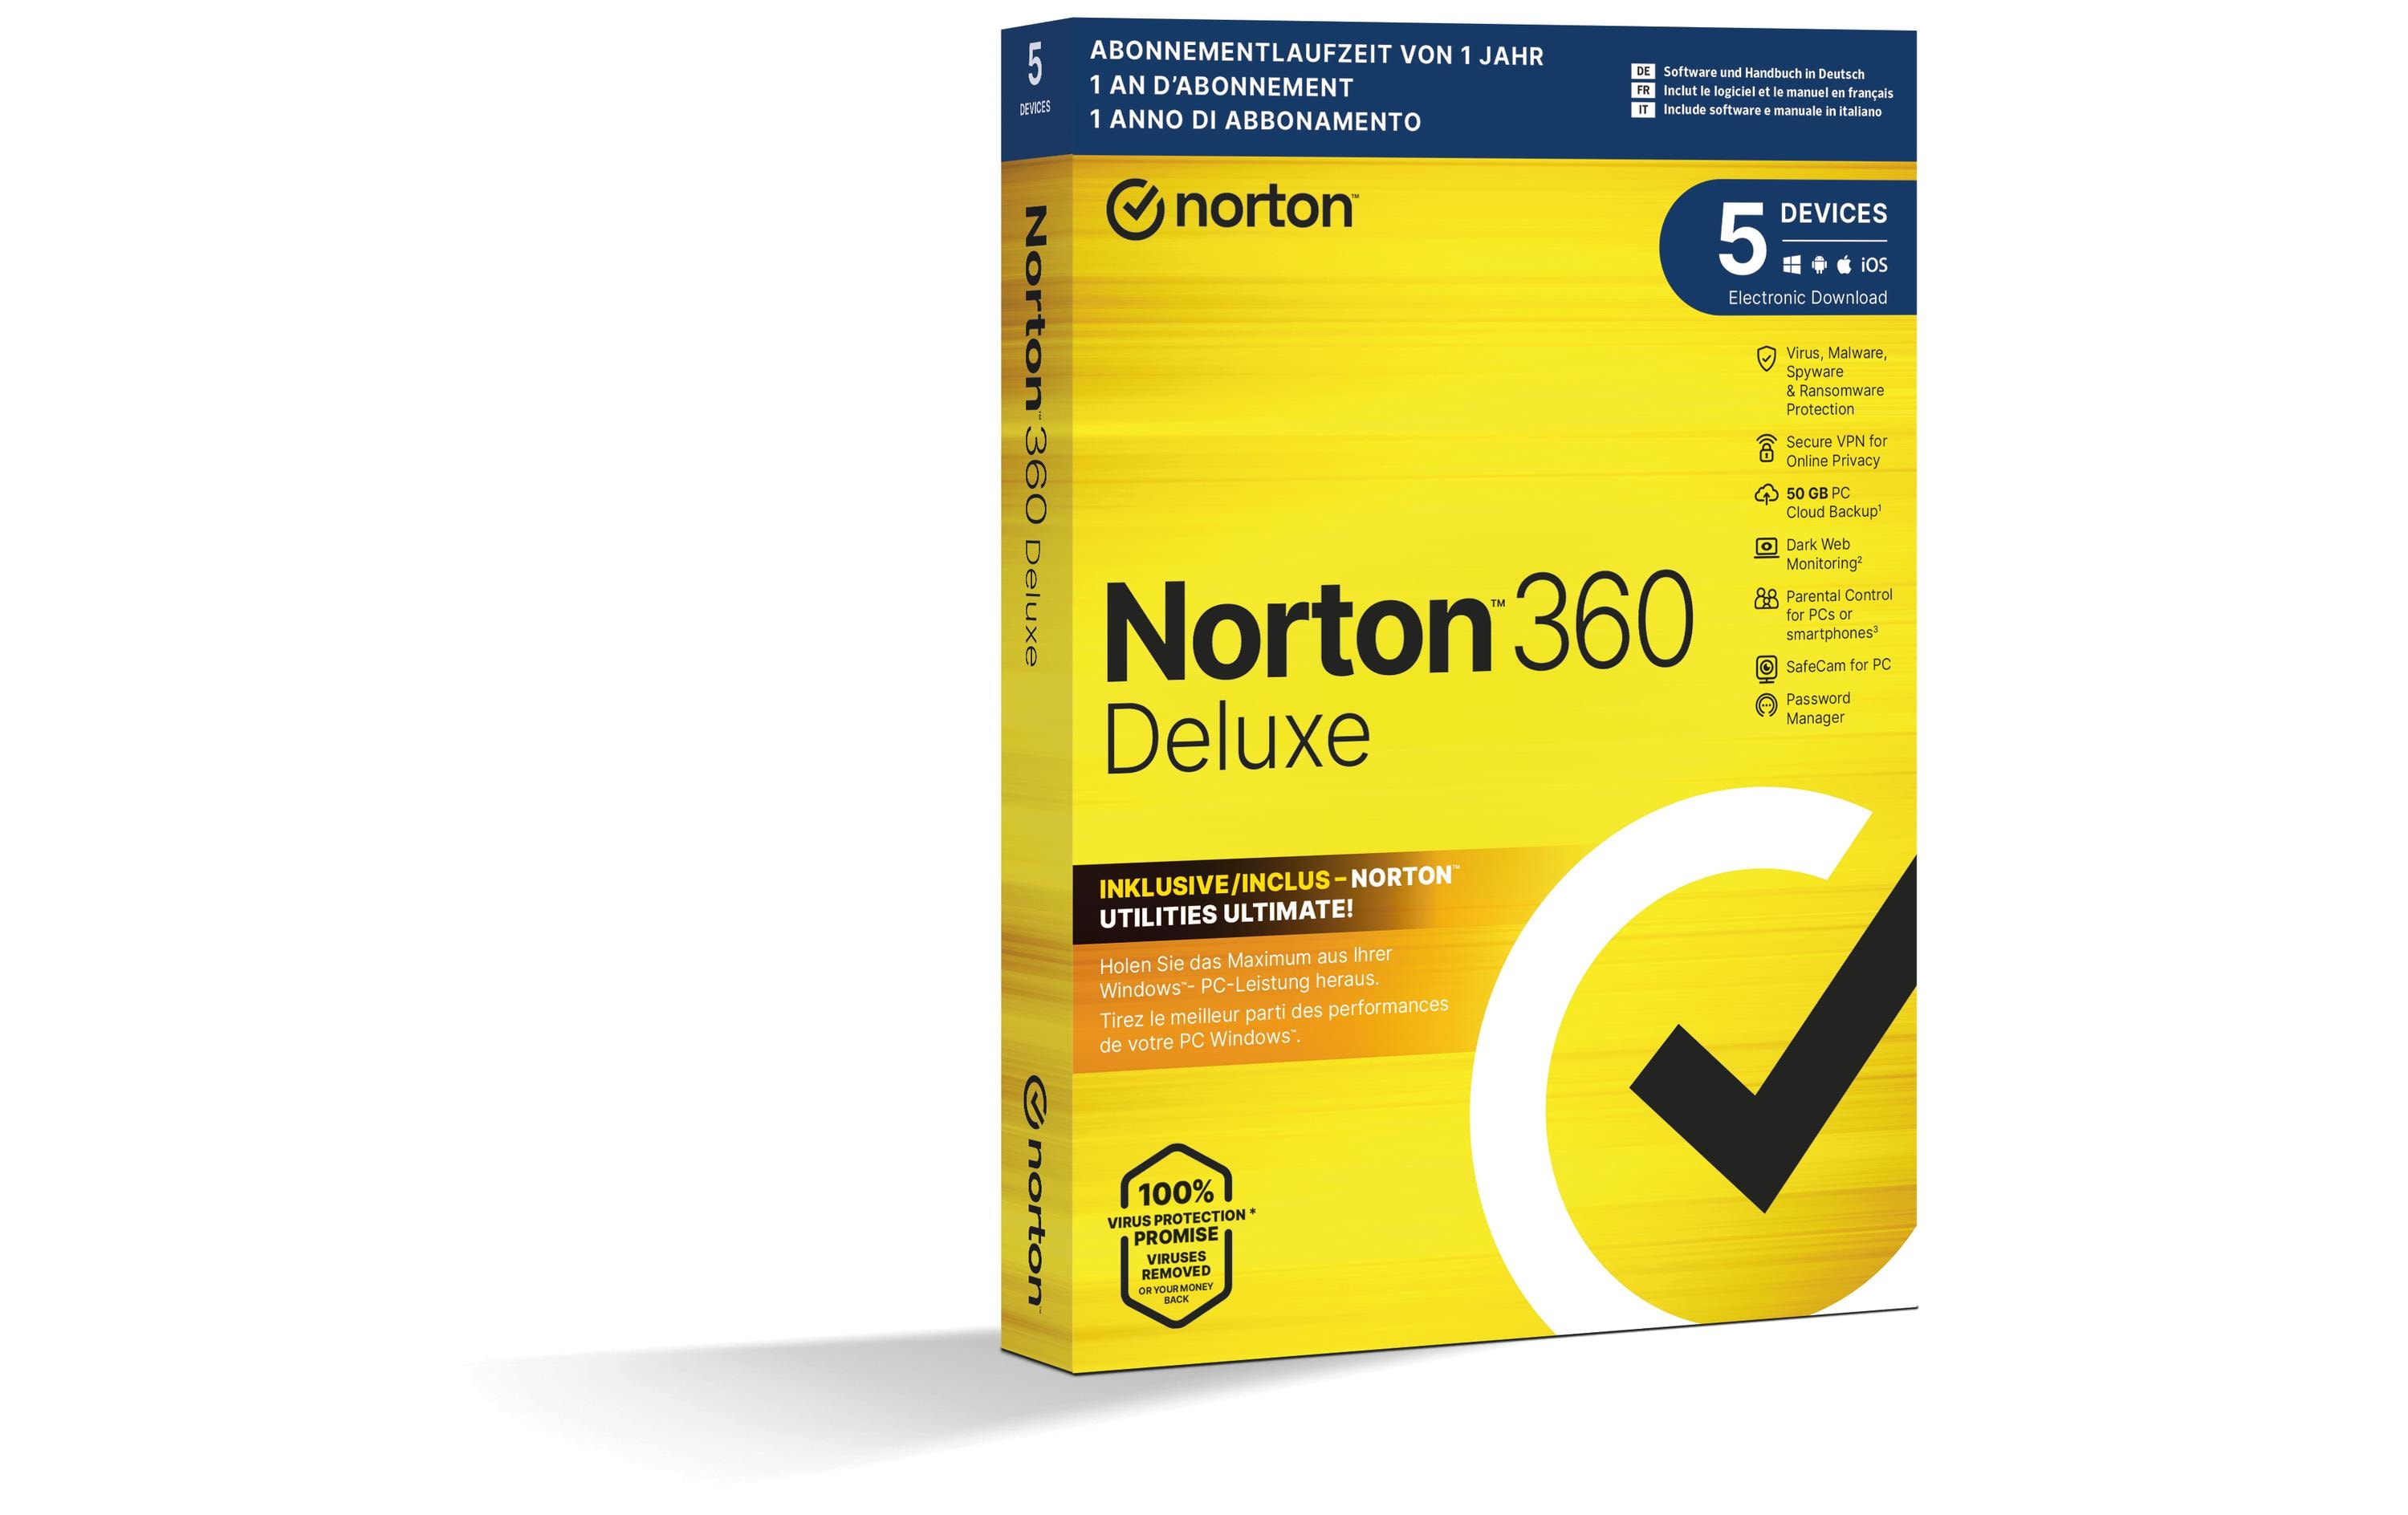 Norton Norton 360 Deluxe inkl. Utilities Ultimate Box, 5 Dev., 1yr